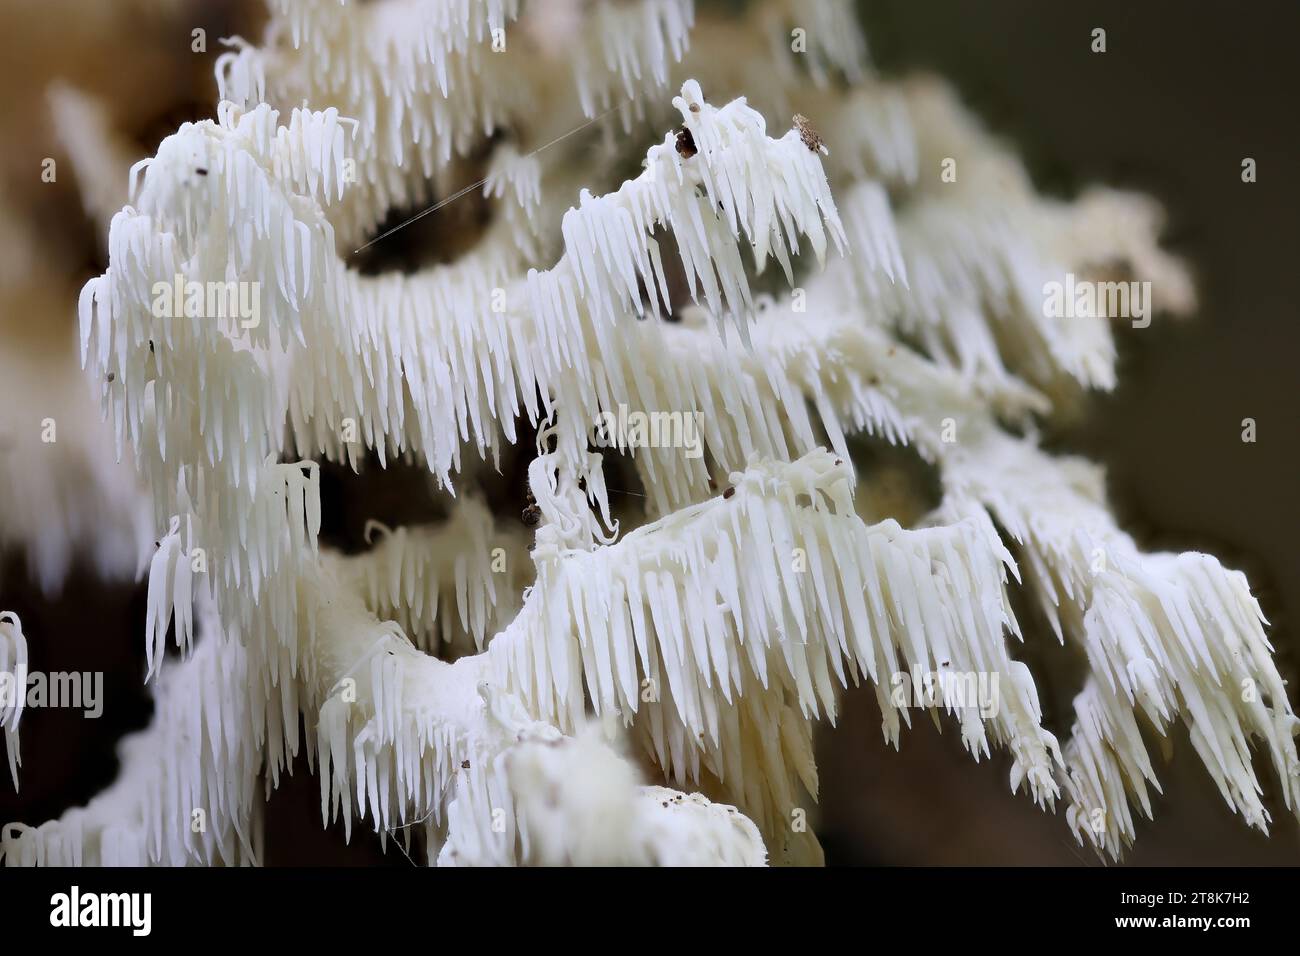 Kammzahnpilz, Korallenzahn (Hericium coralloides, Hericium clathroides), auf totem Holz, Deutschland, Mecklenburg-Vorpommern Stockfoto